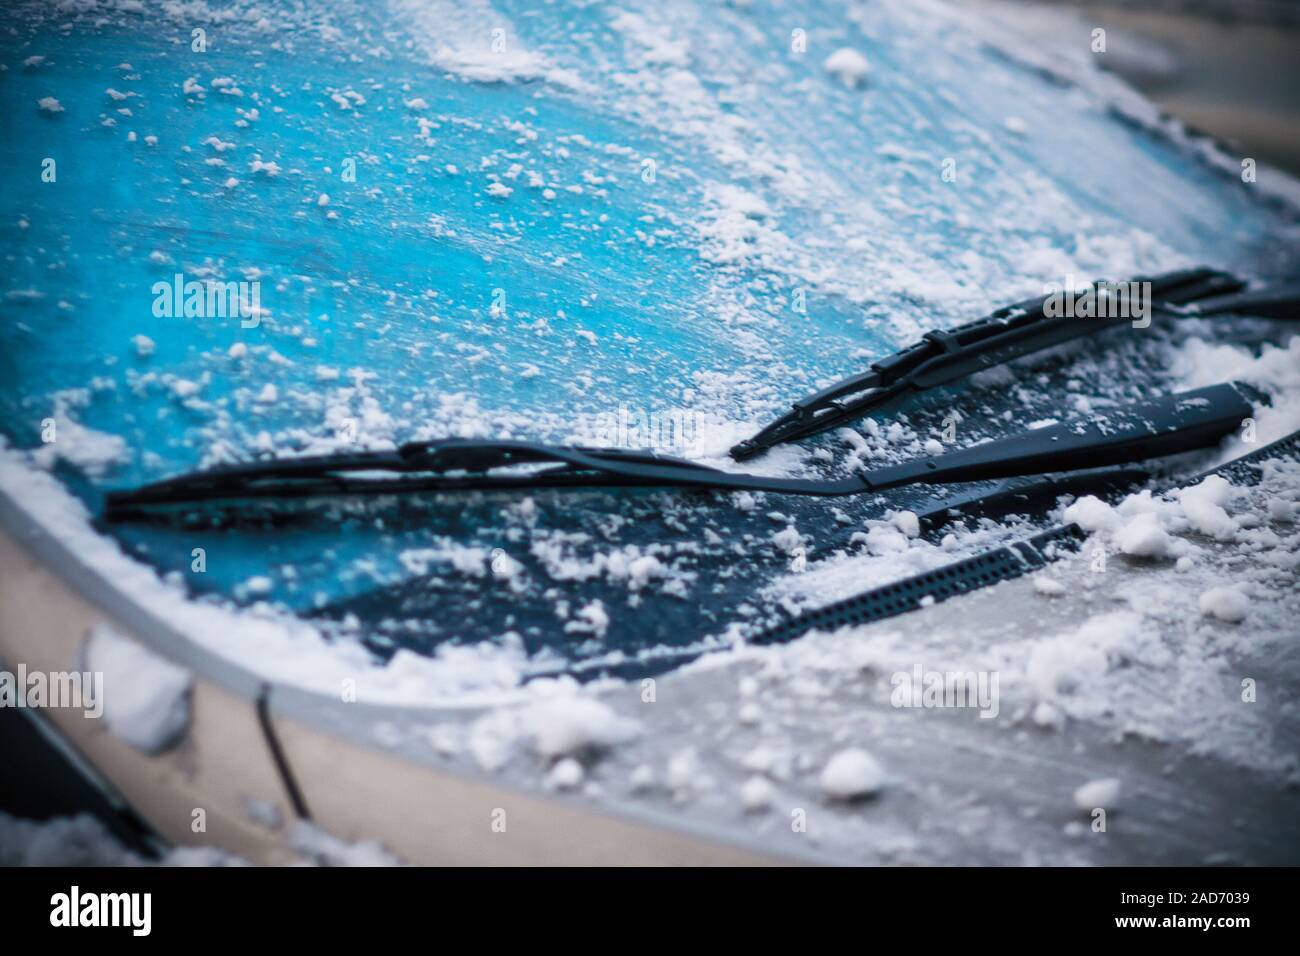 Dans la neige froide de l'hiver, le nettoie sa voiture, pare-brise couvert de givre et de neige, de glaces. Banque D'Images